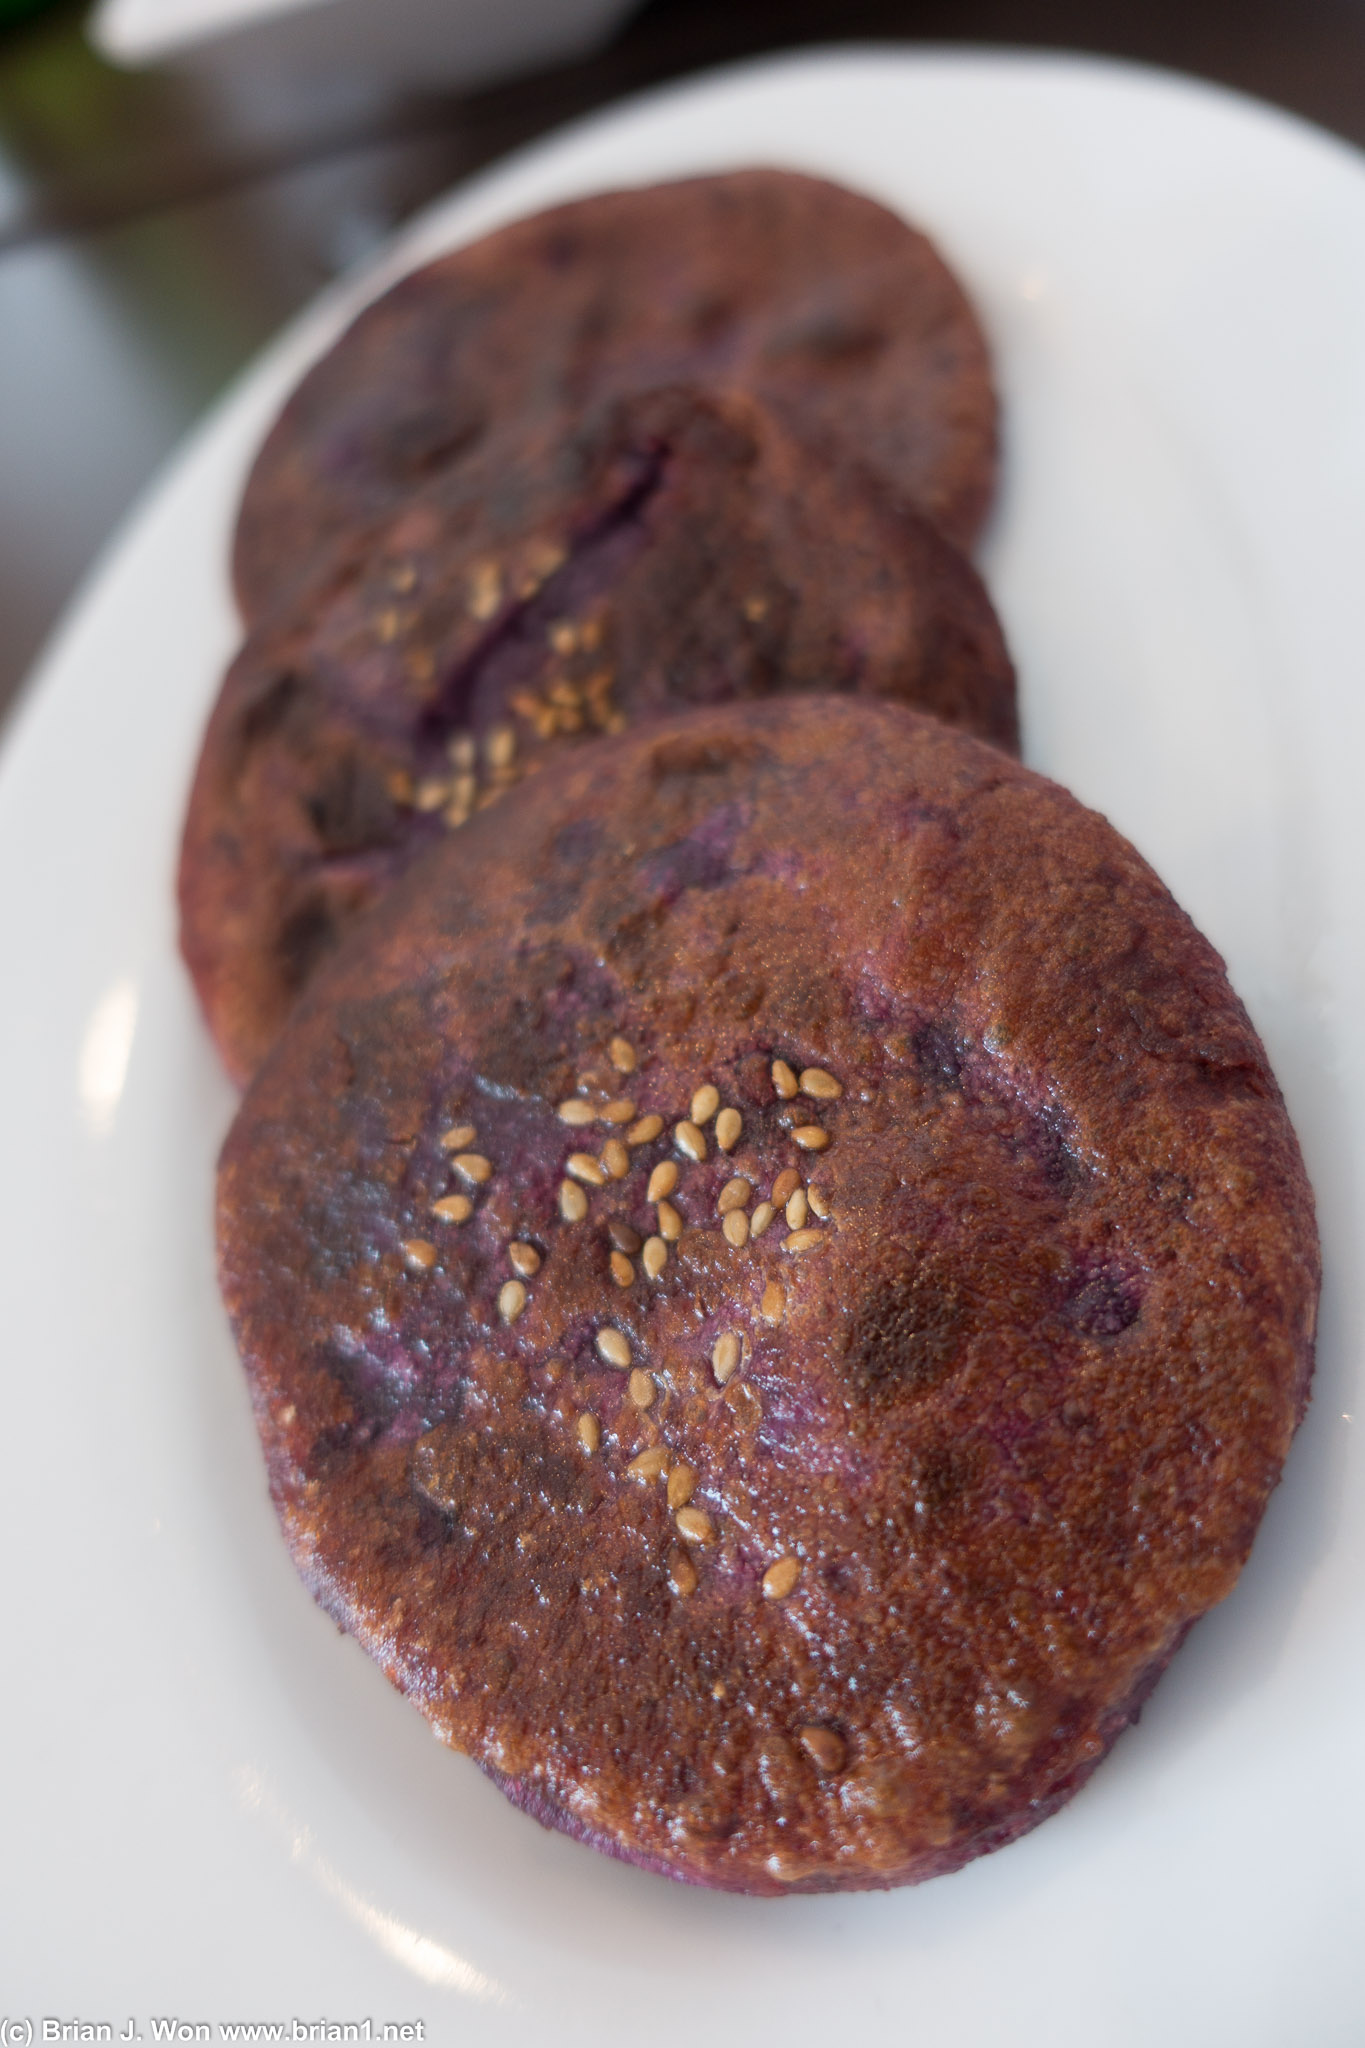 Purple potato pancake. Actually pretty good. Again a bit bland, but still good.